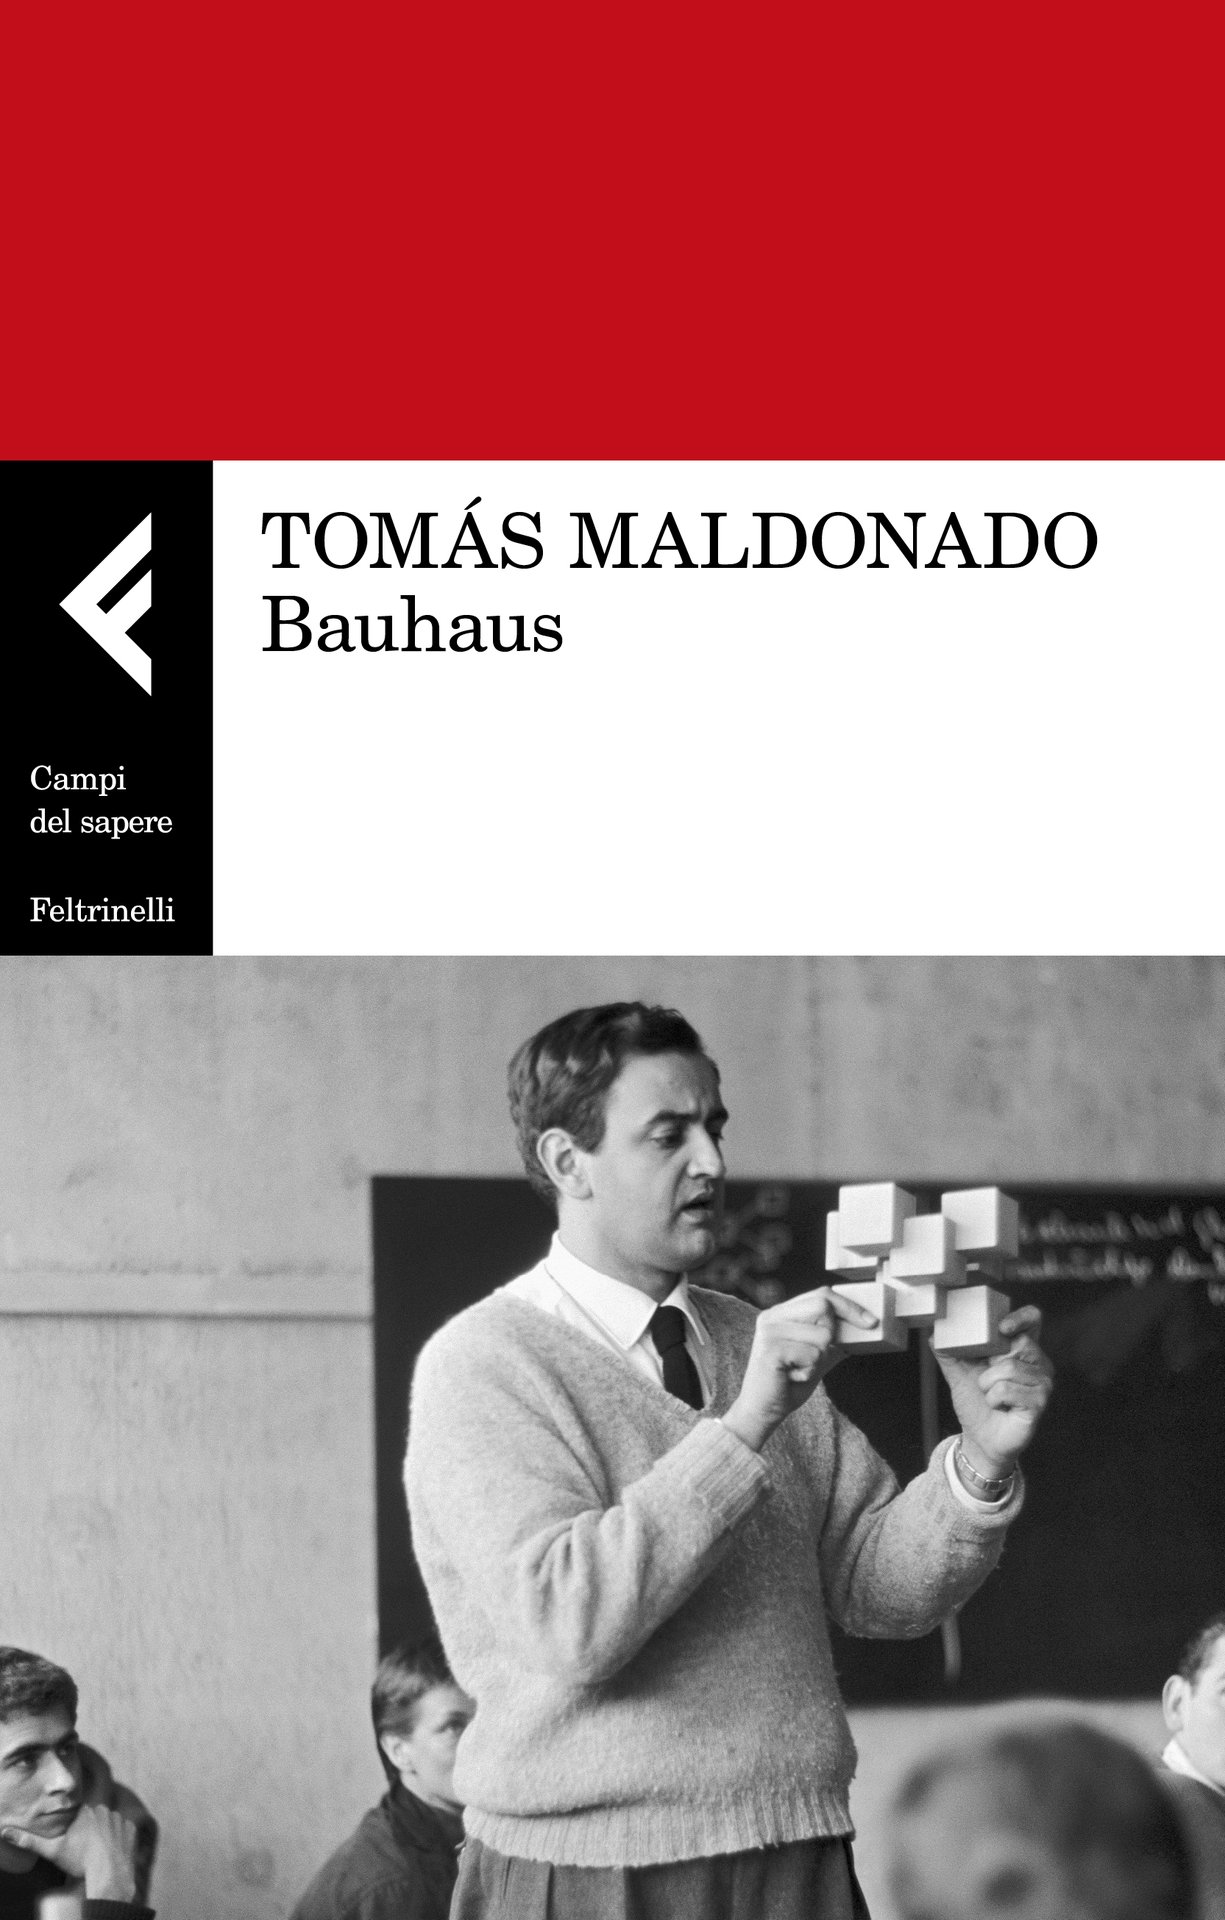 Per una cultura aperta e progressista. Il Bauhaus e Tomás Maldonado / martedì 4 febbraio alle 18:30